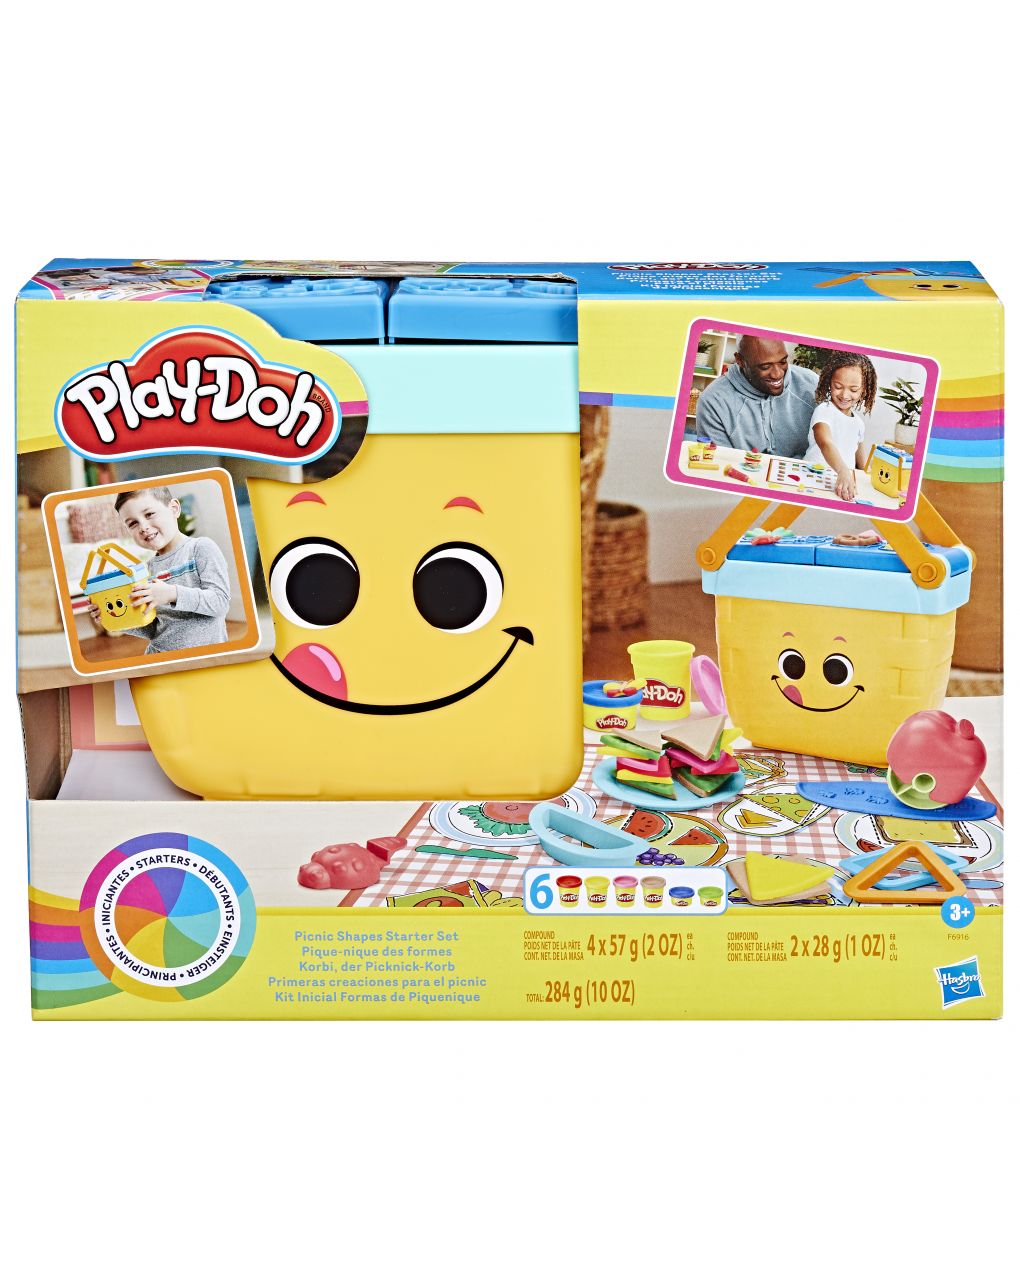 Il mio primo picnic delle forme - play-doh - Play-Doh